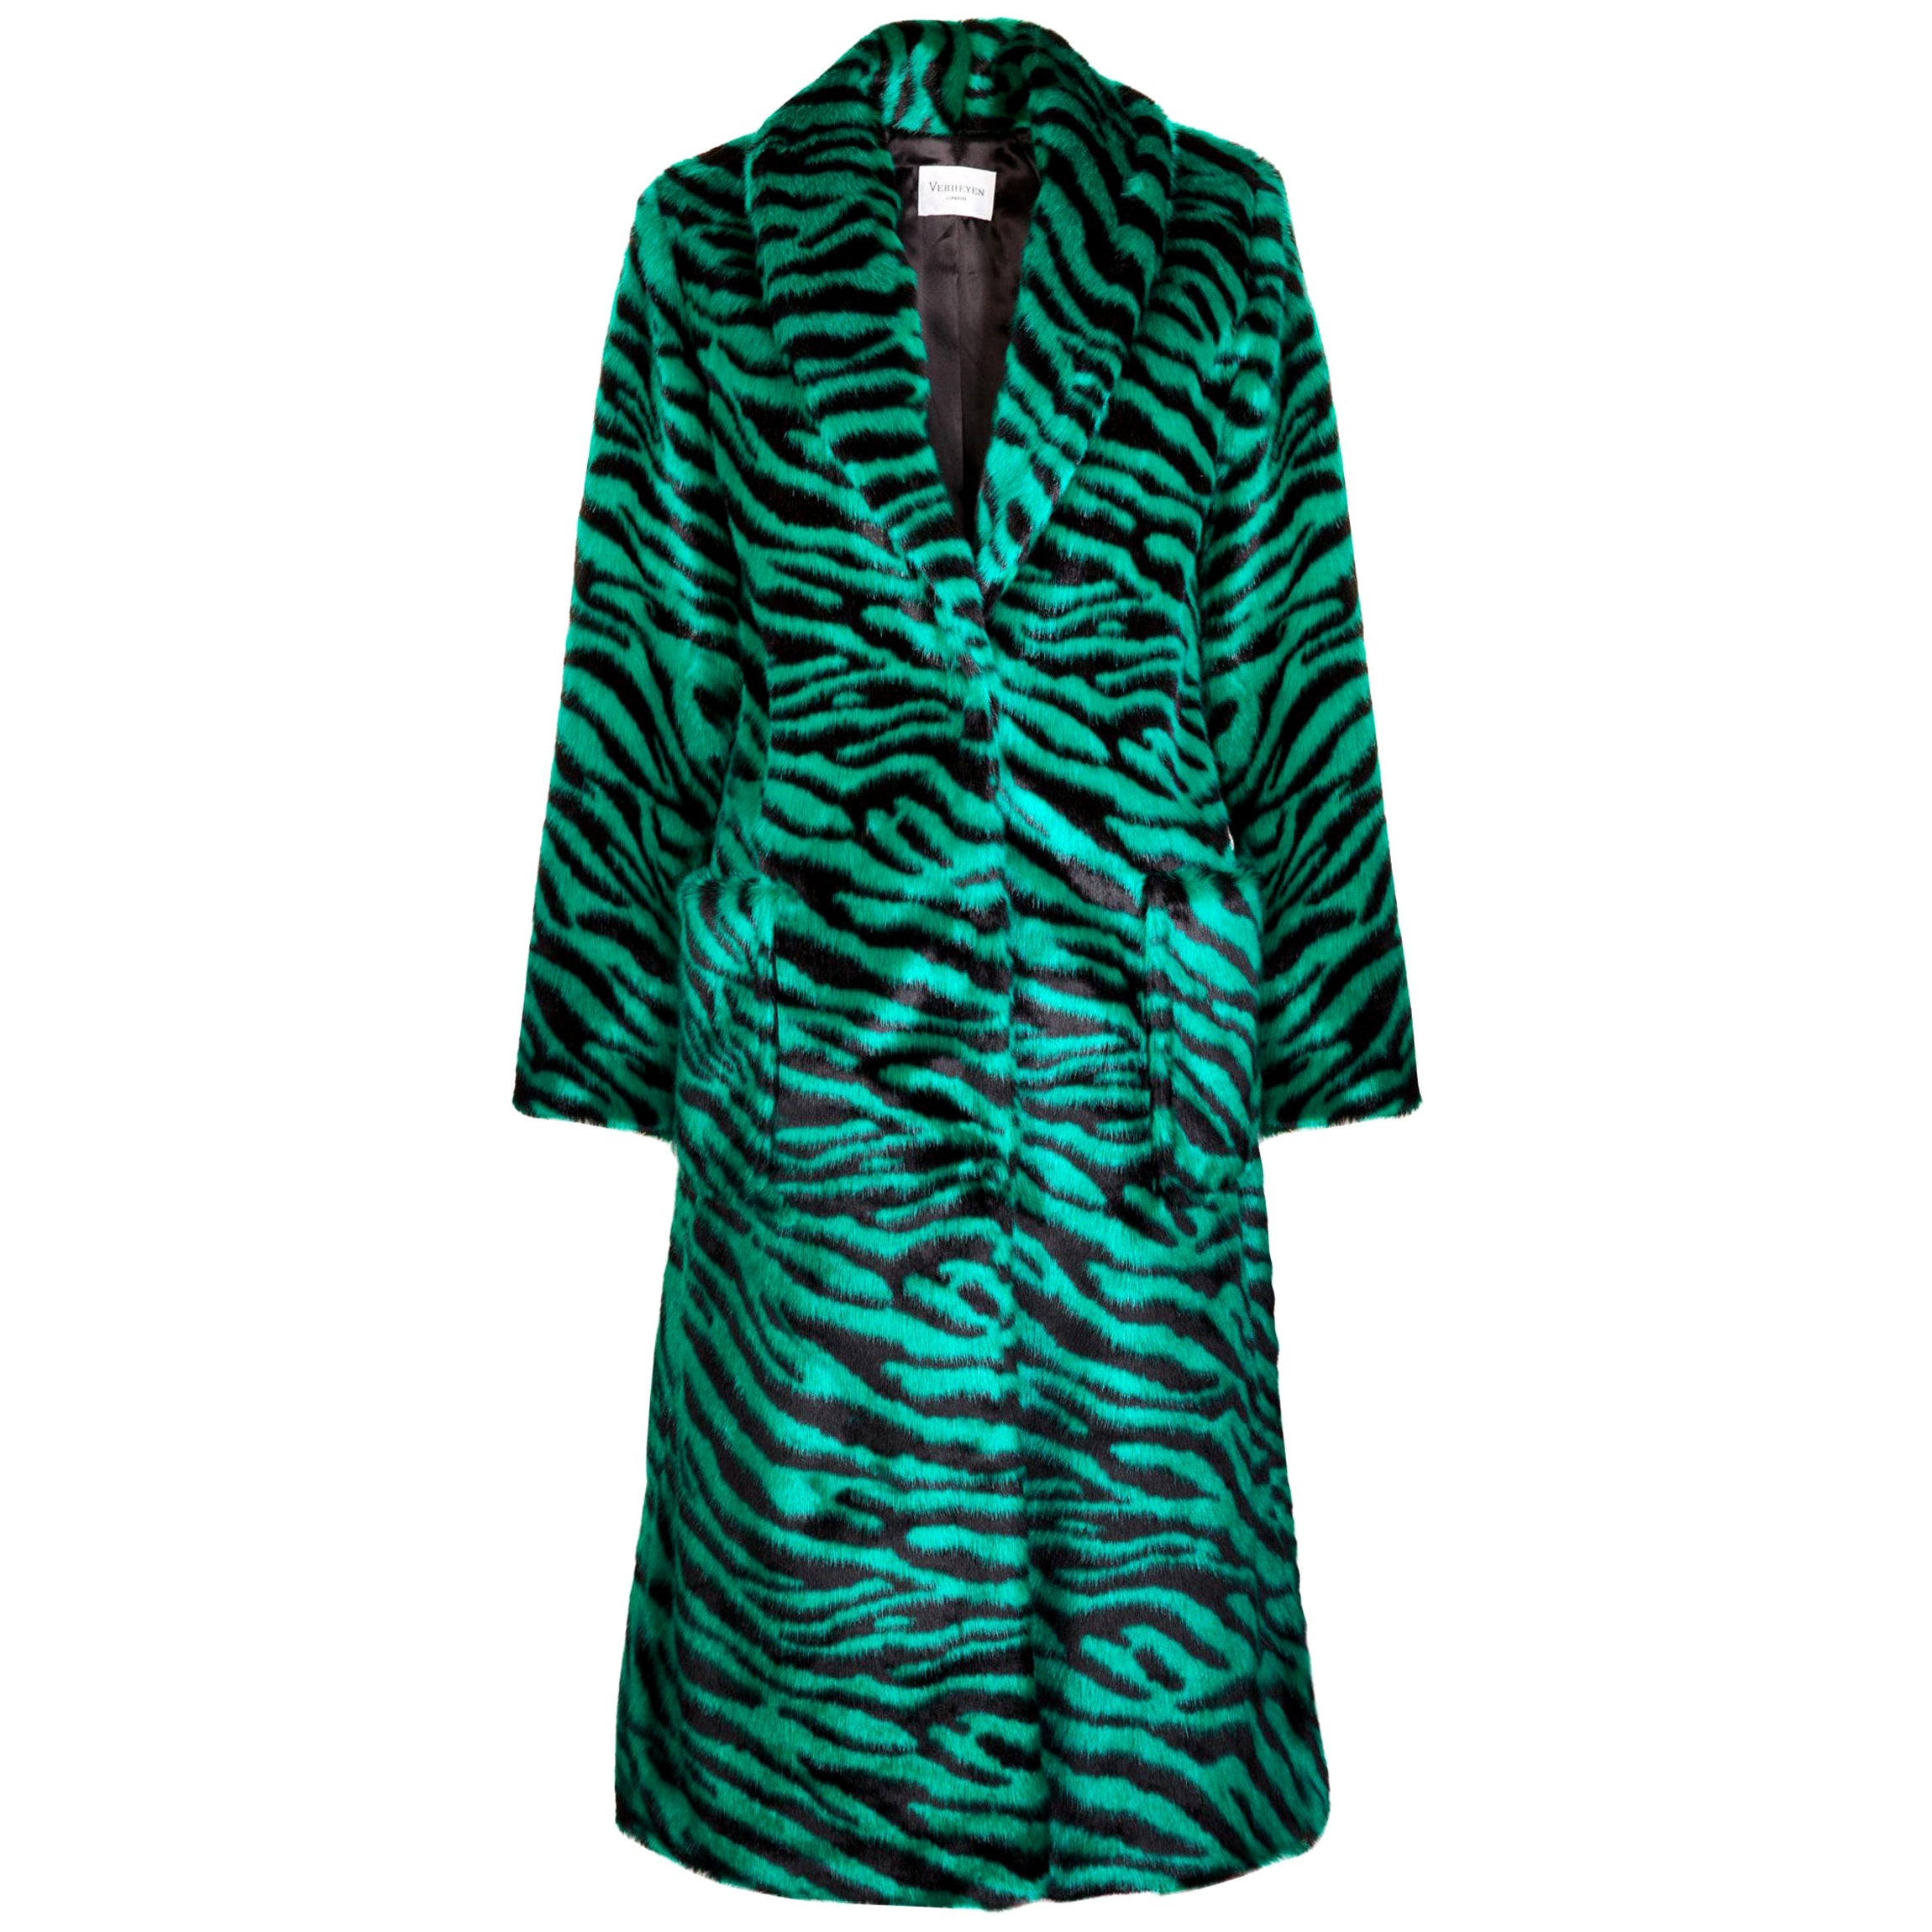 Verheyen London Esmeralda Faux Fur Coat in Emerald Green Zebra Print size uk 12 For Sale